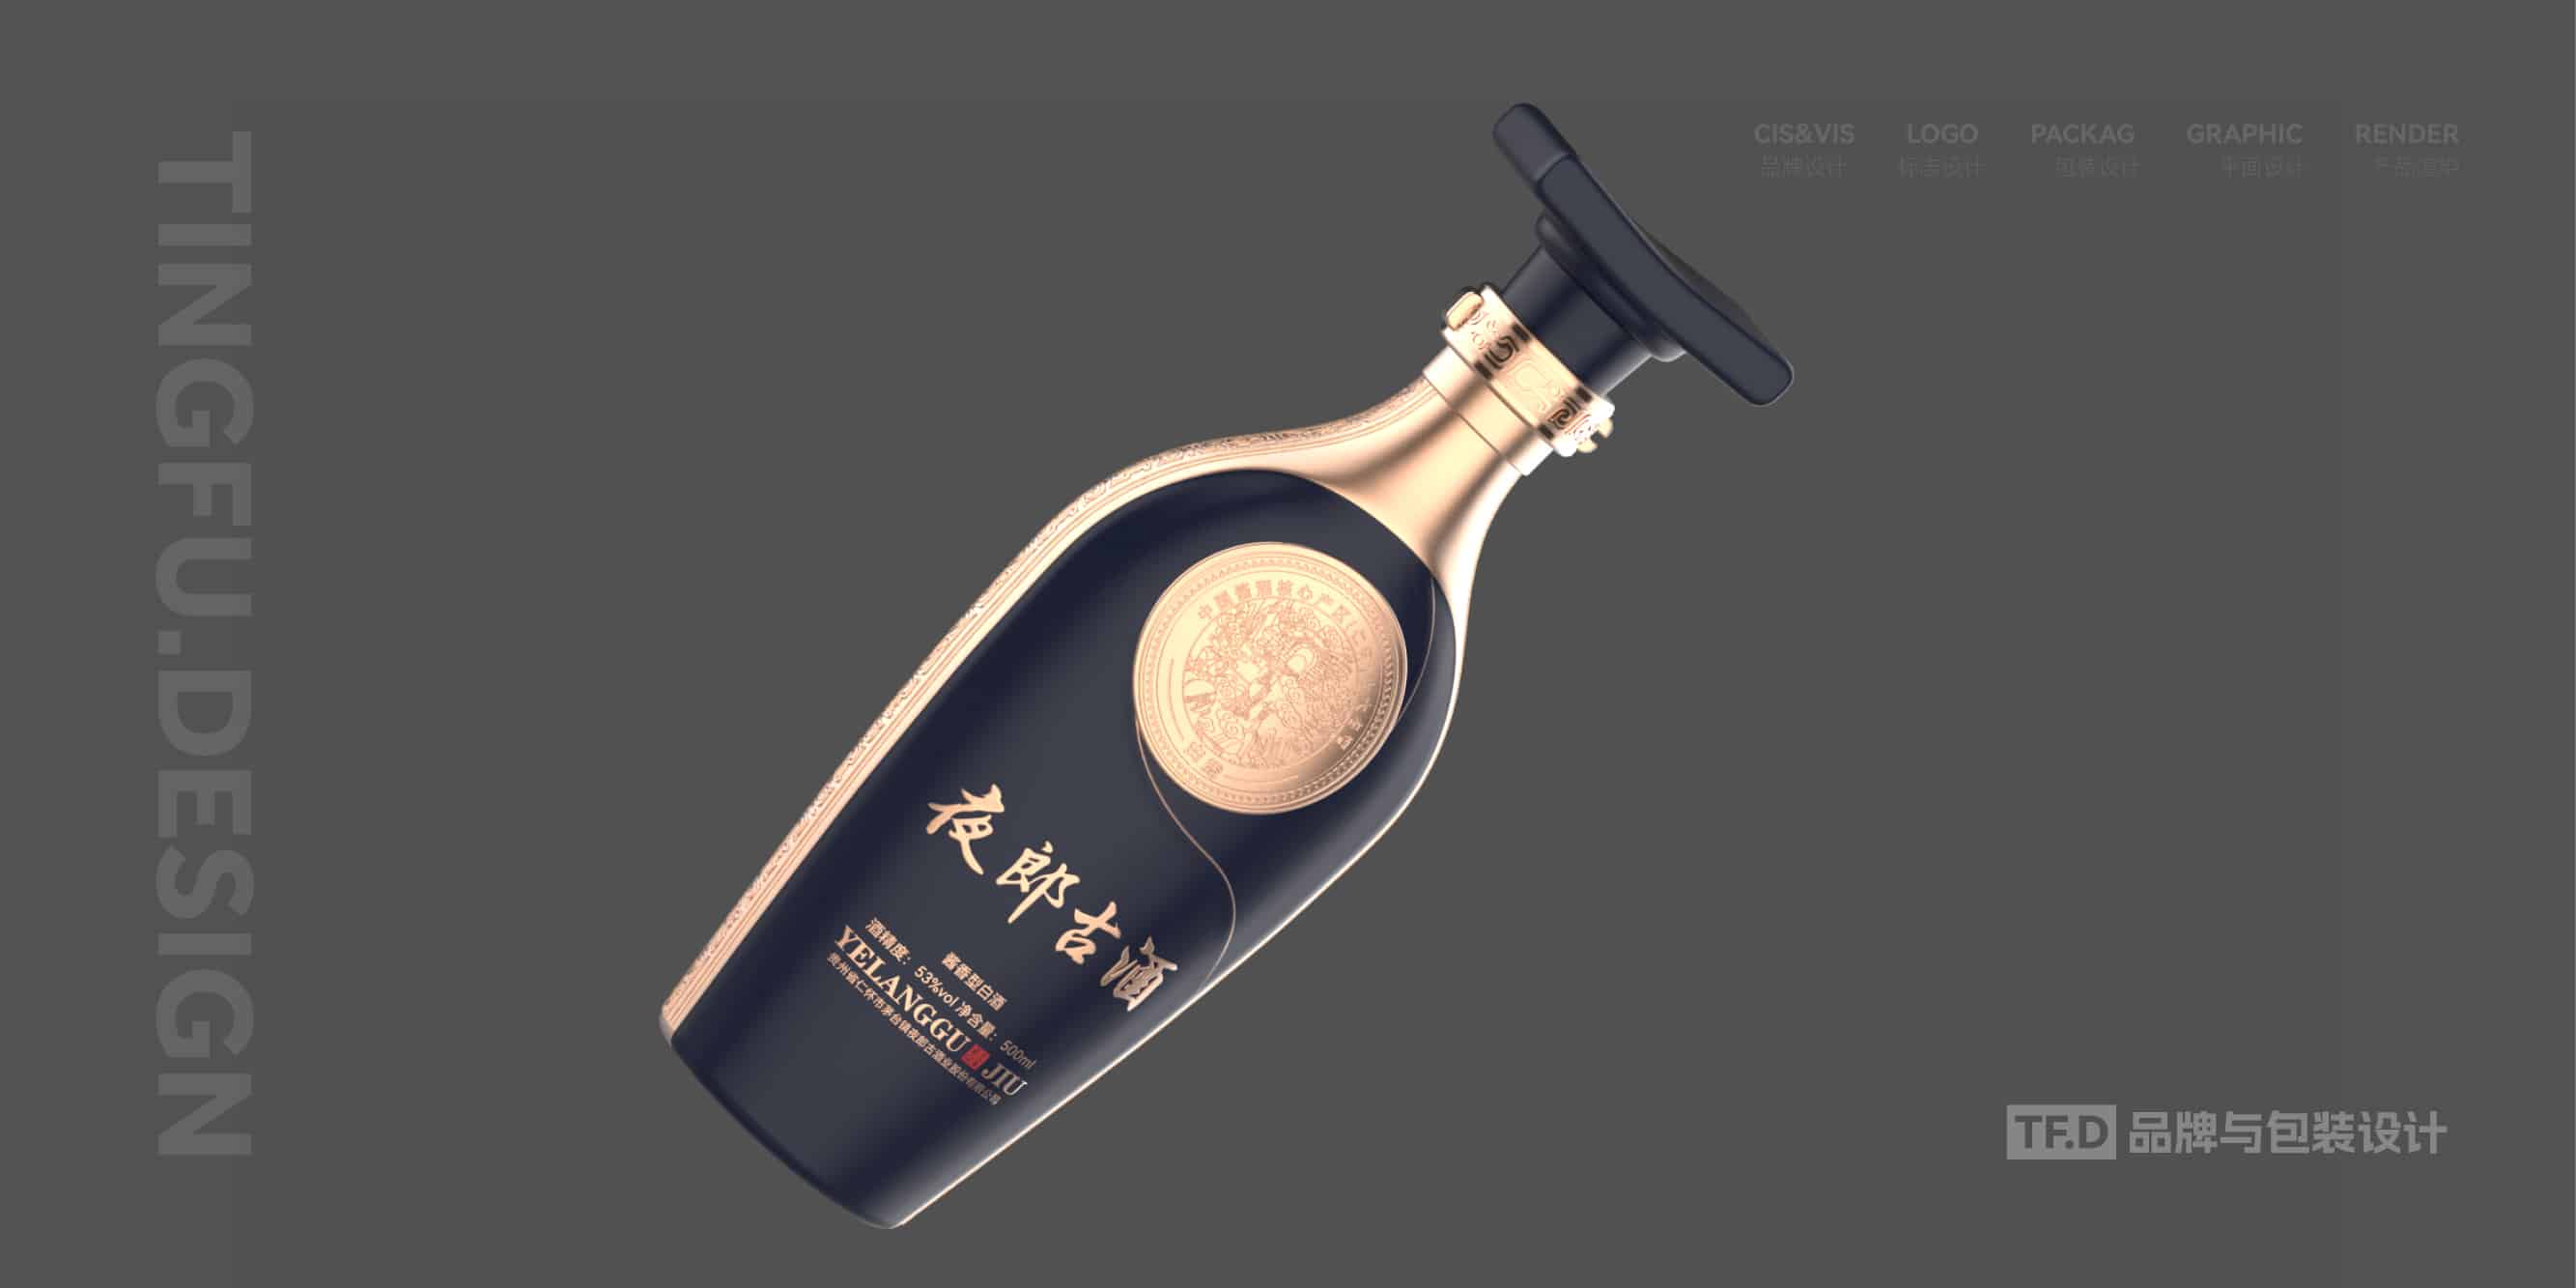 TFD品牌与包装设计-部分酒包装设计案例39-tuya.jpg